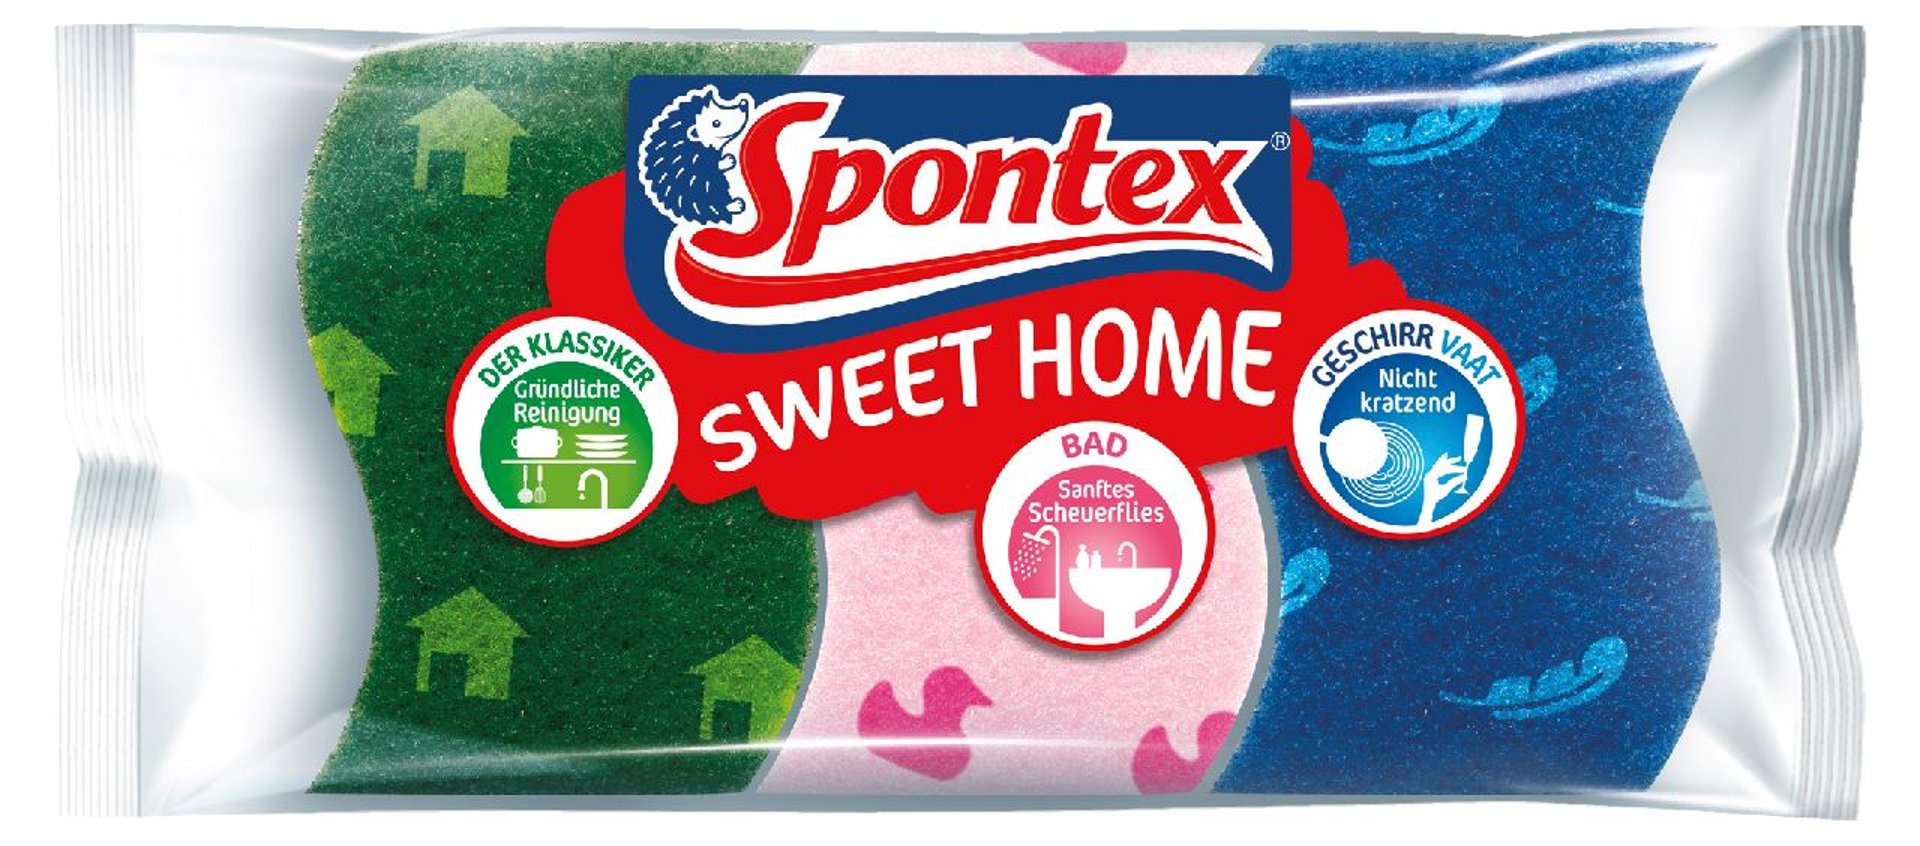 Spontex Sweet Home Schwamm-Set - 3 Stück